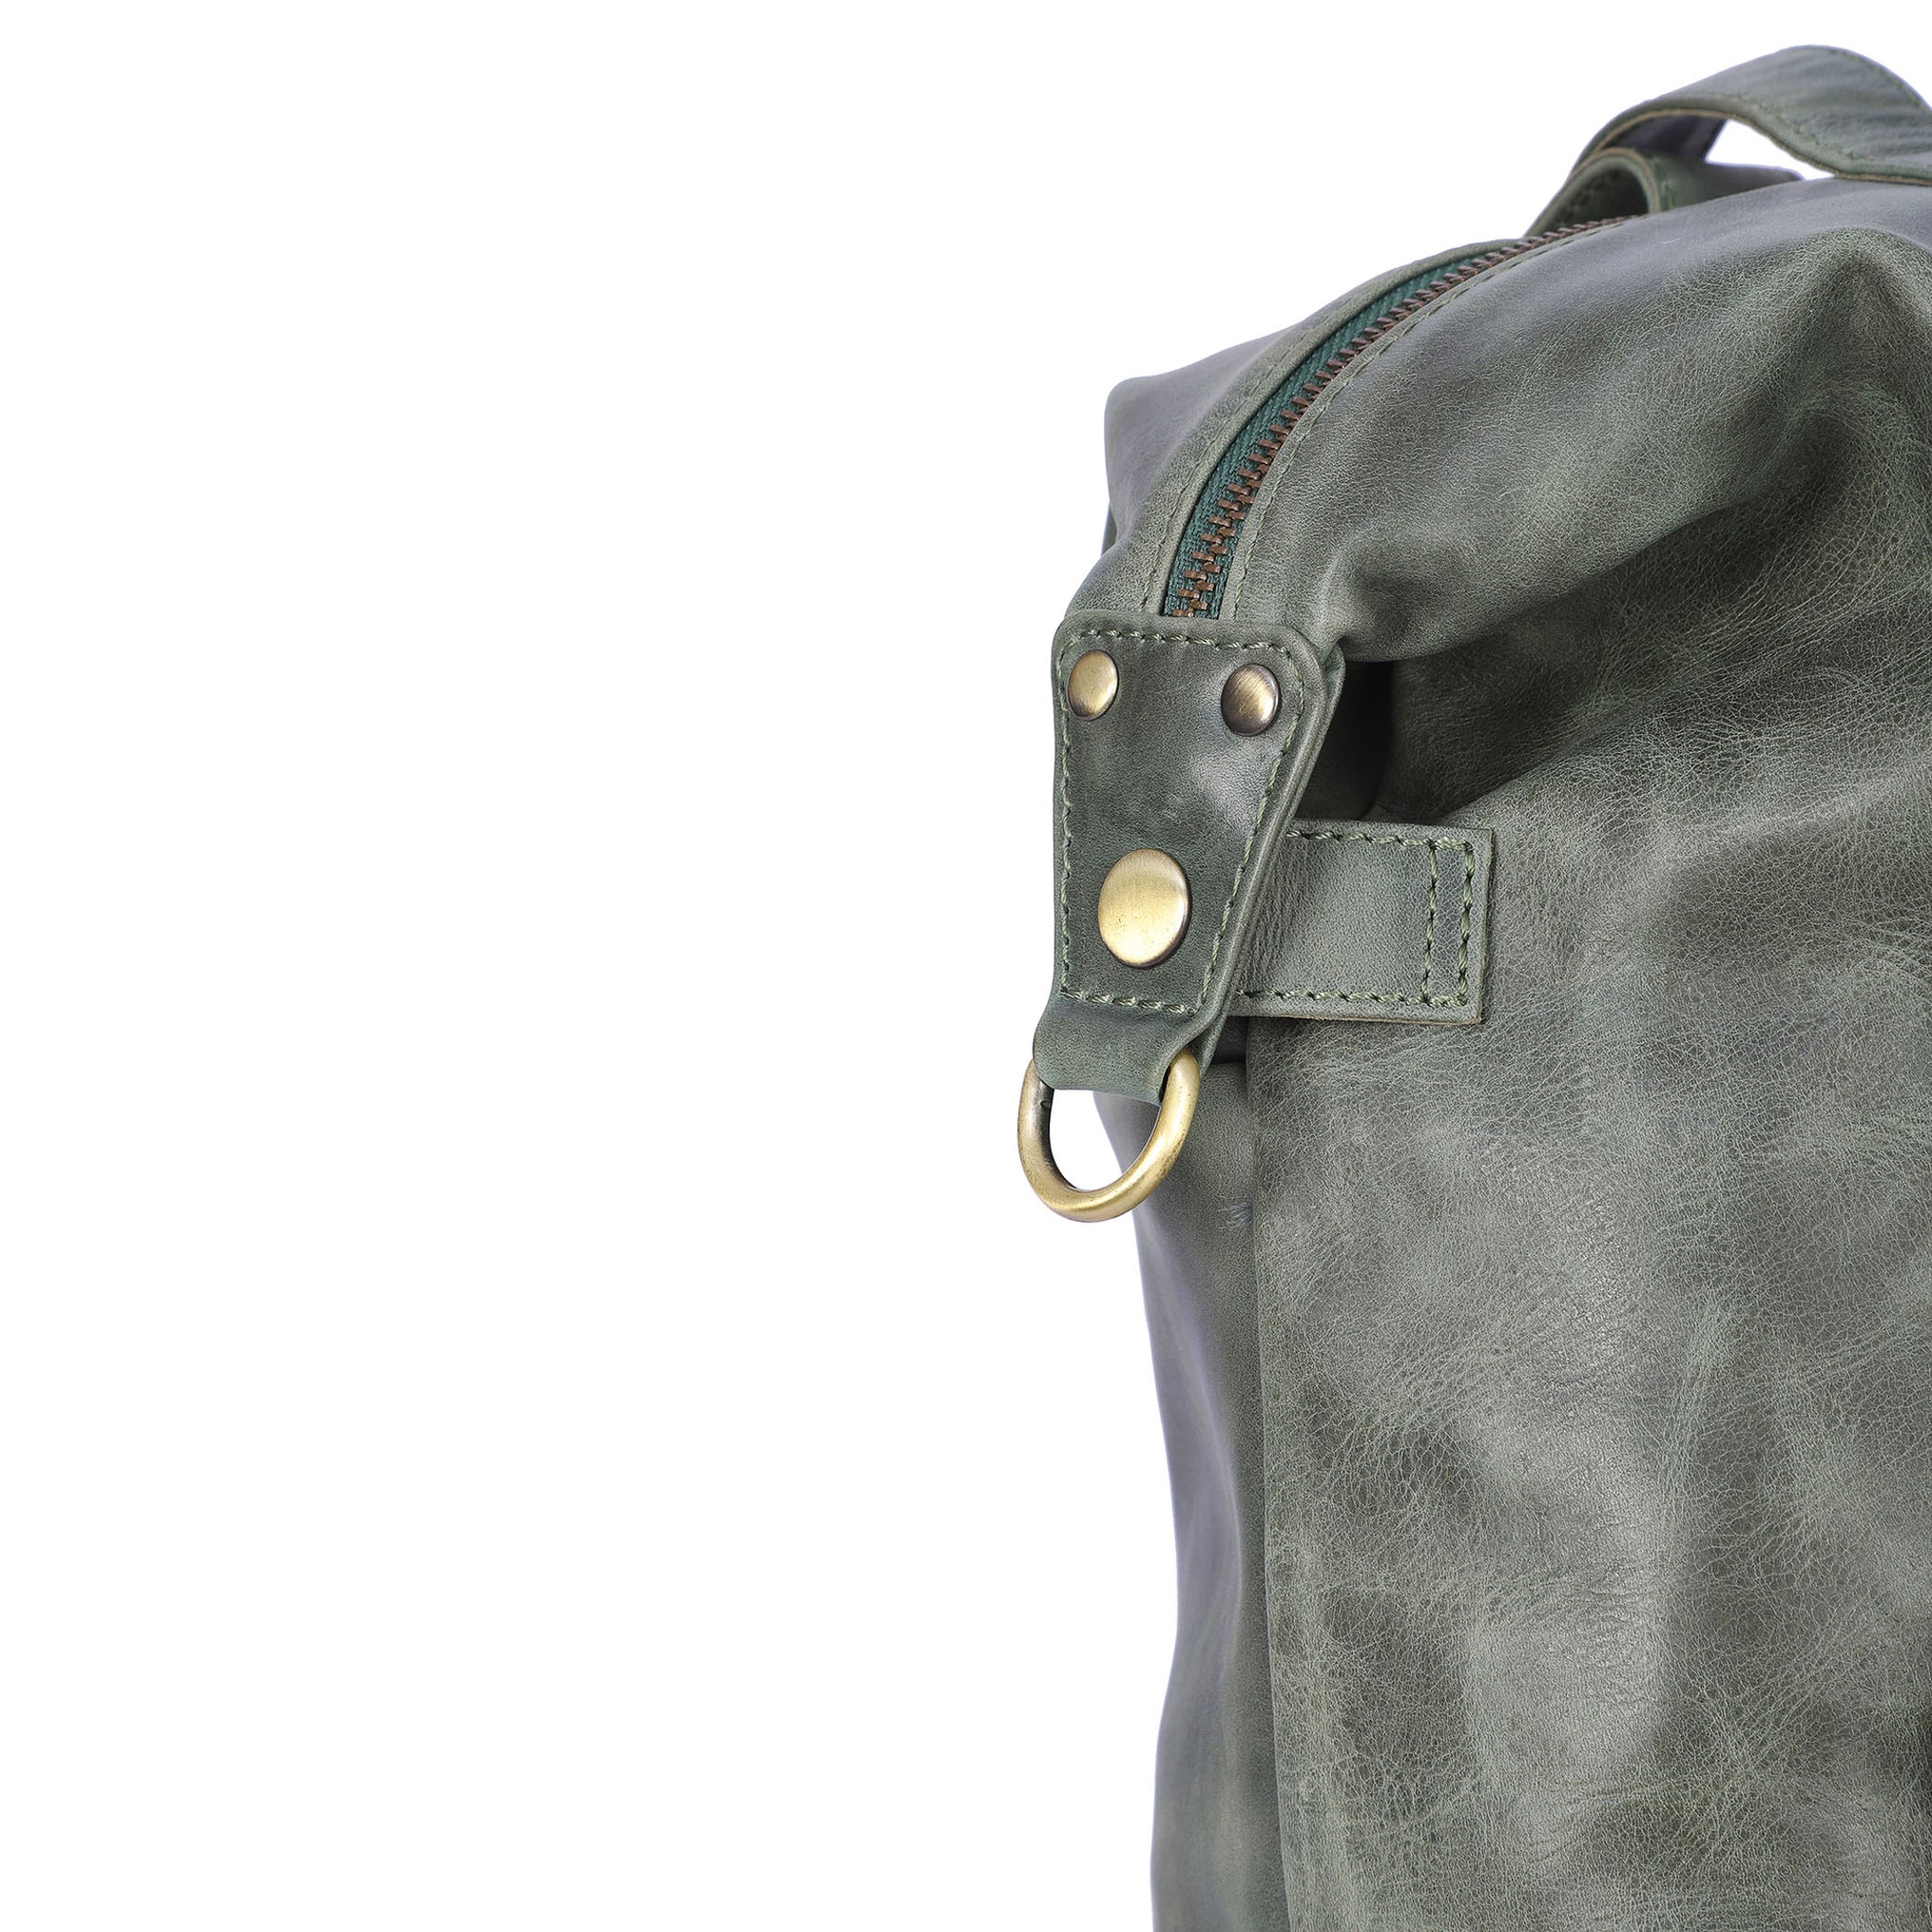 Tiitstoy Backpack Purse For Women,Fashion Leather Handbag,Travel  Bag,Satchel Rucksack Ladies Bag,Shoulder Multifunctional Travel Bag -  Walmart.com